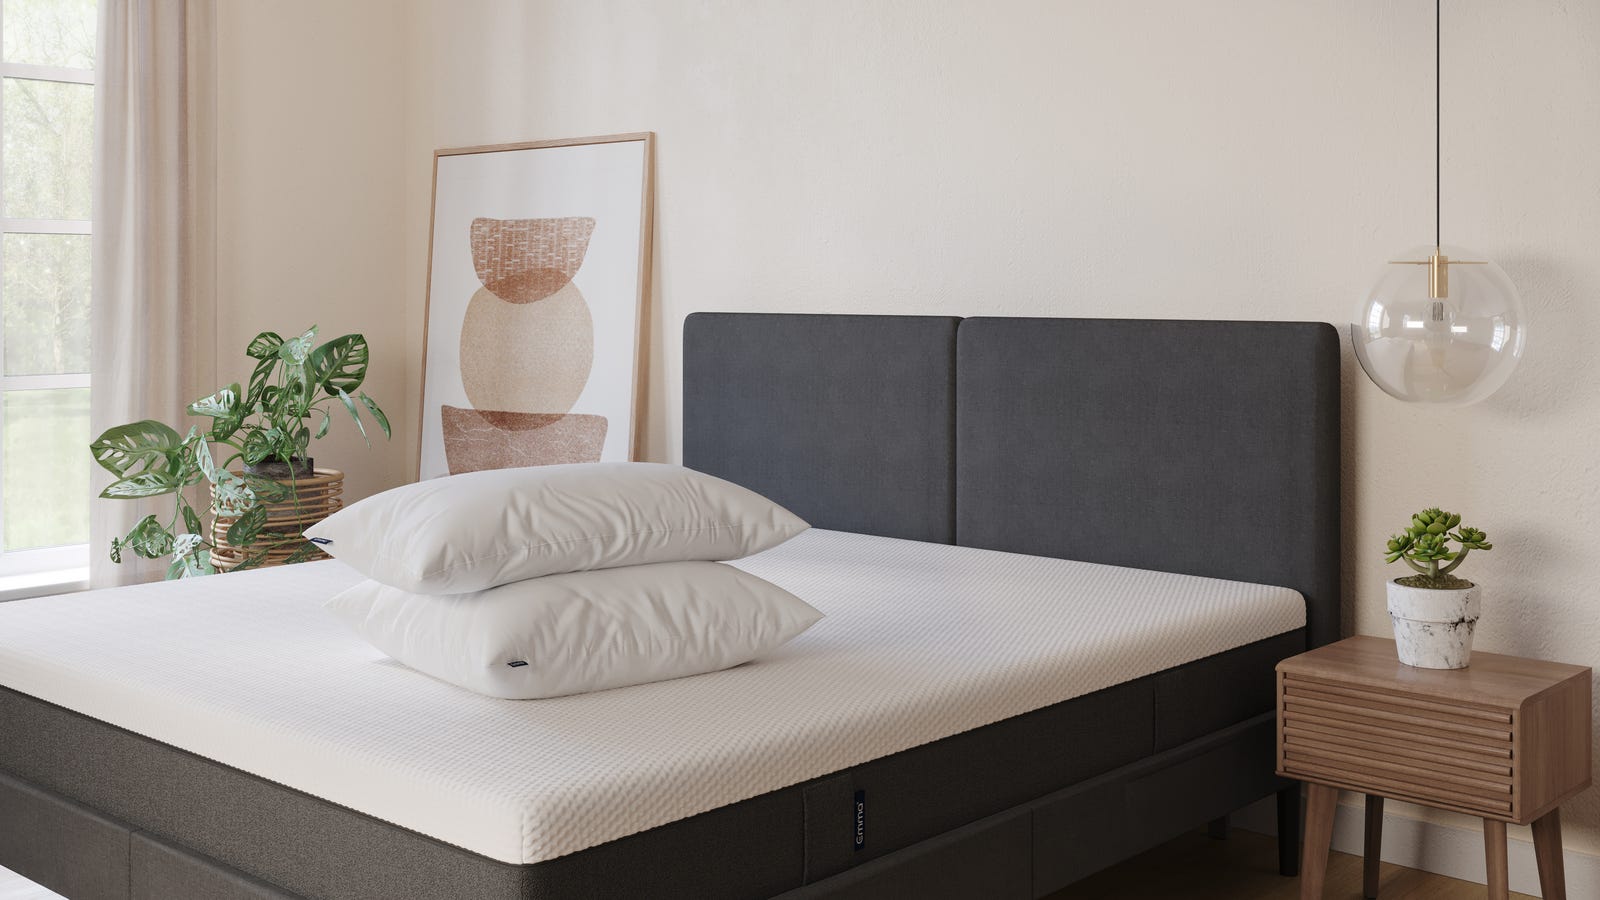 2 almohadas emma microfibra blancas encima de colchón original en acogedora habitación